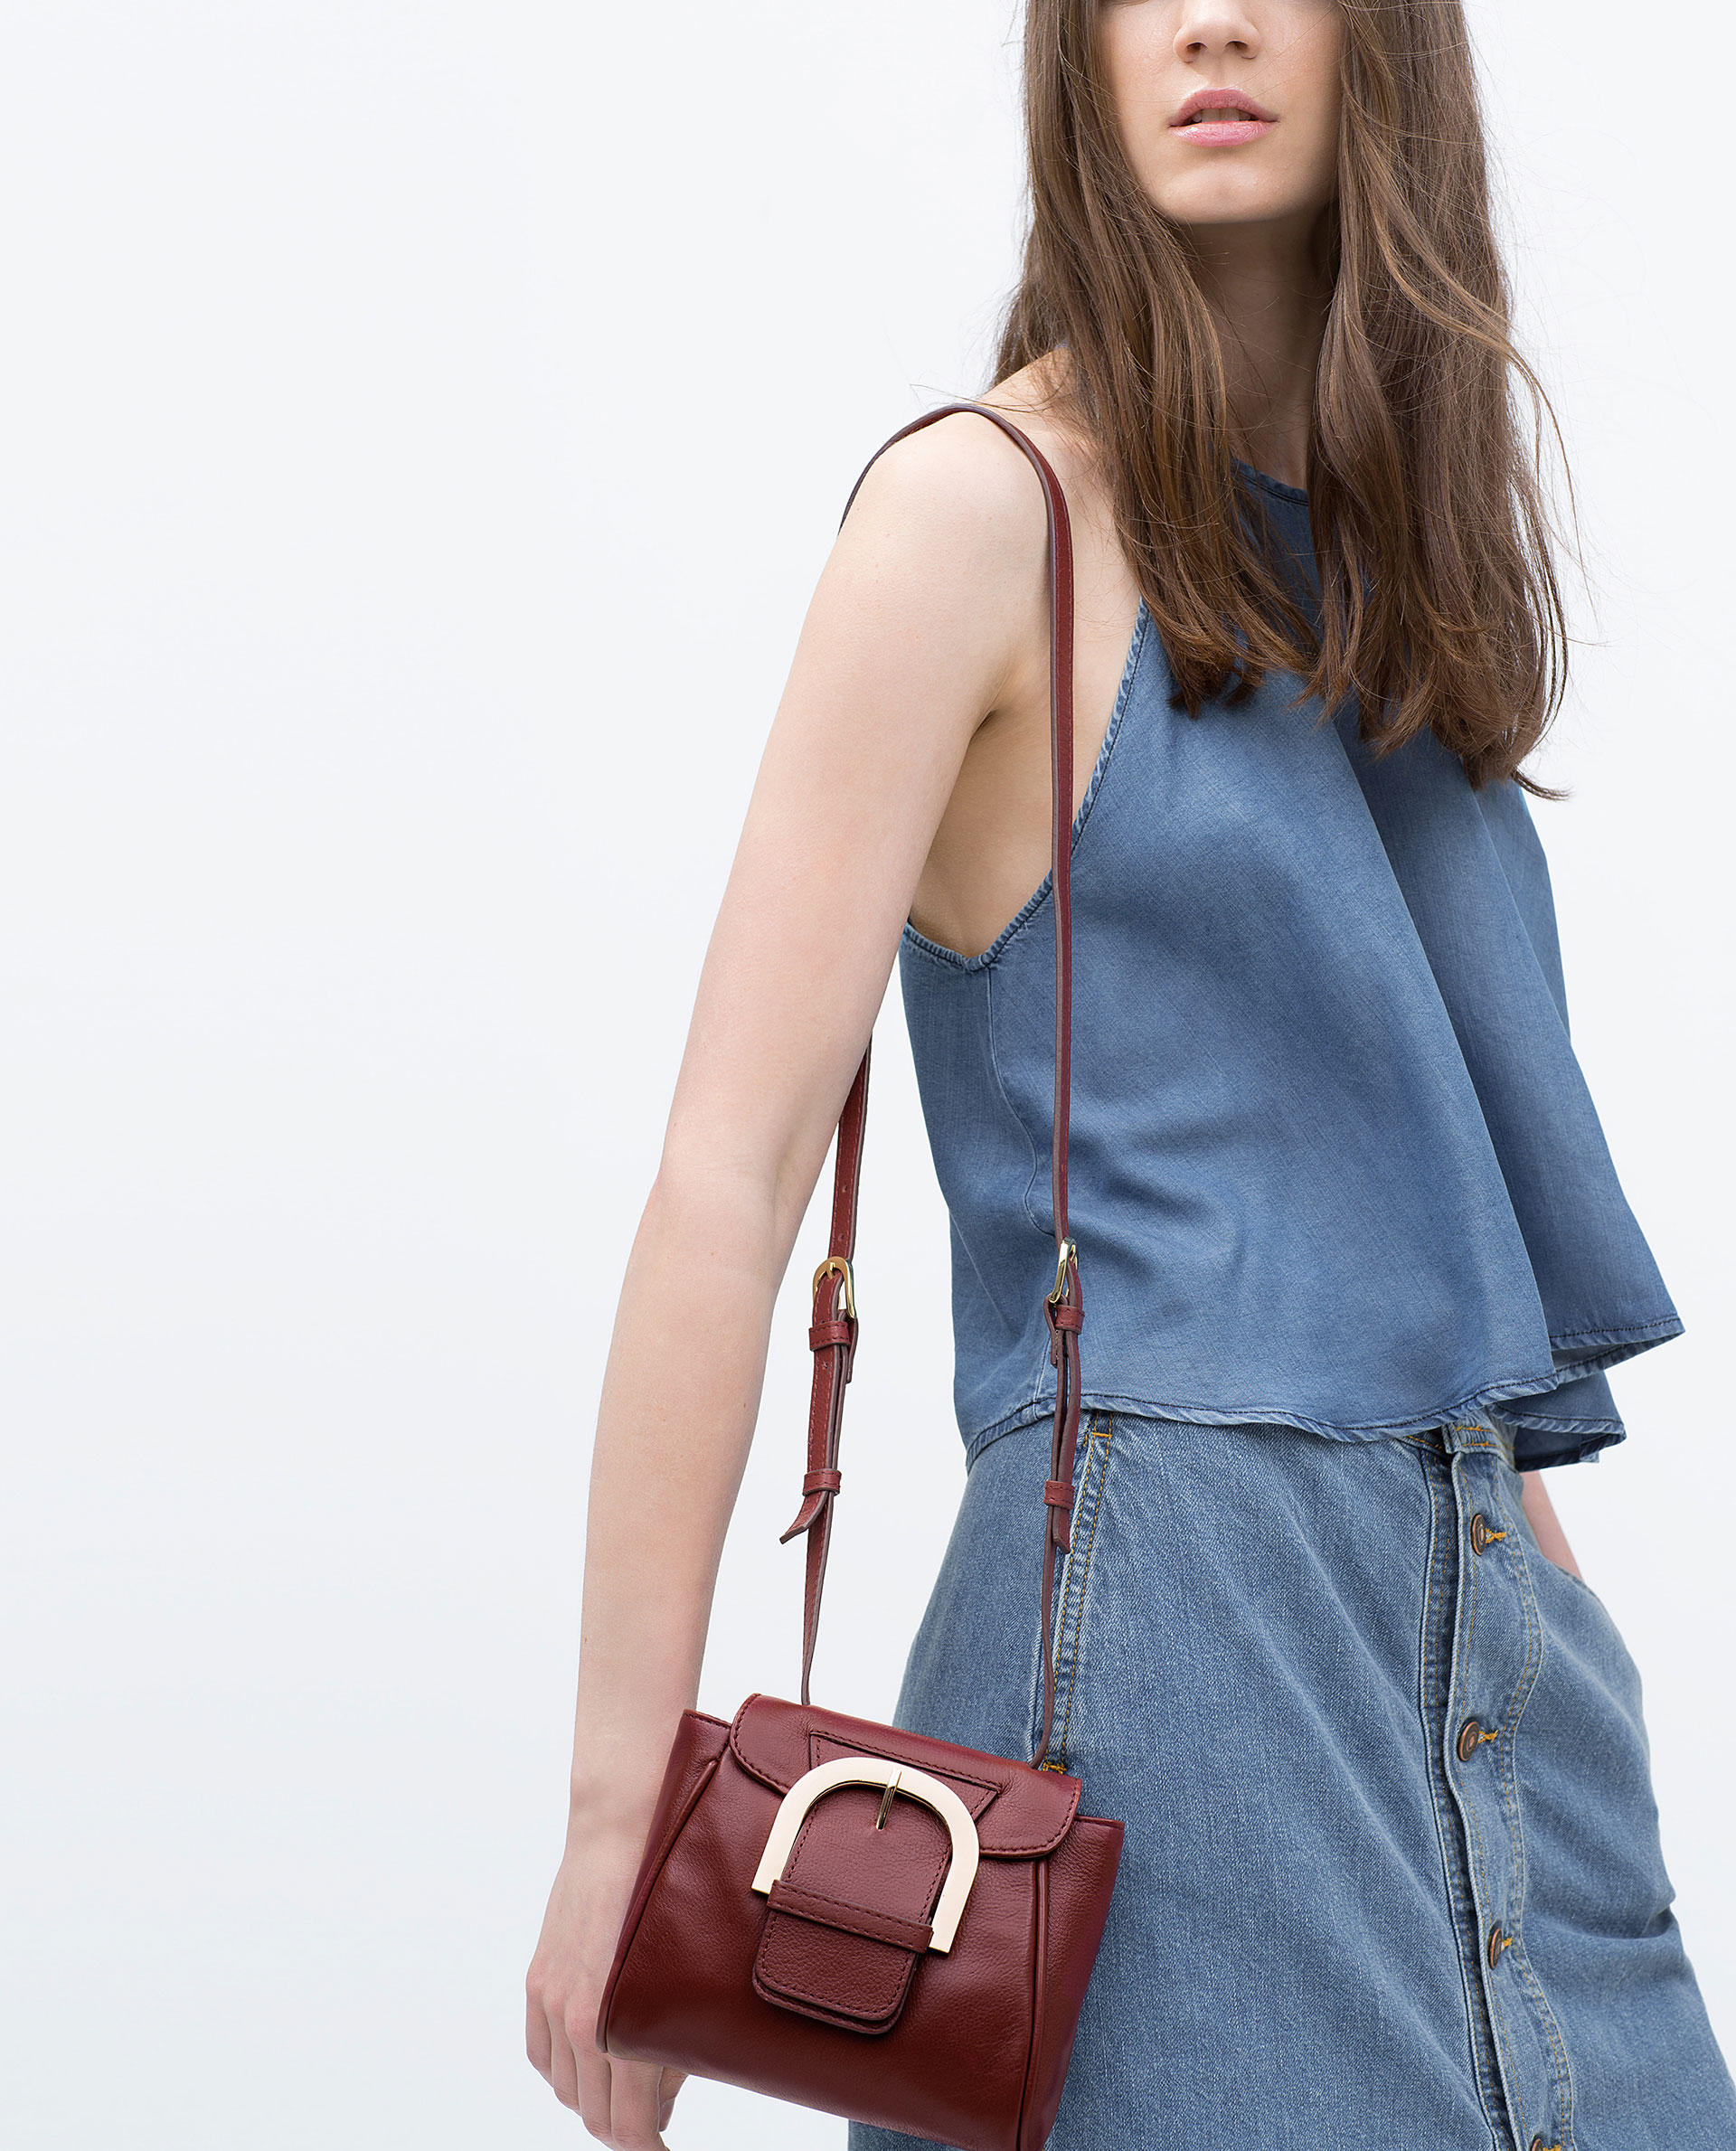 La colección y carteras para esta primavera verano 2015 en Zara - Modalia.es